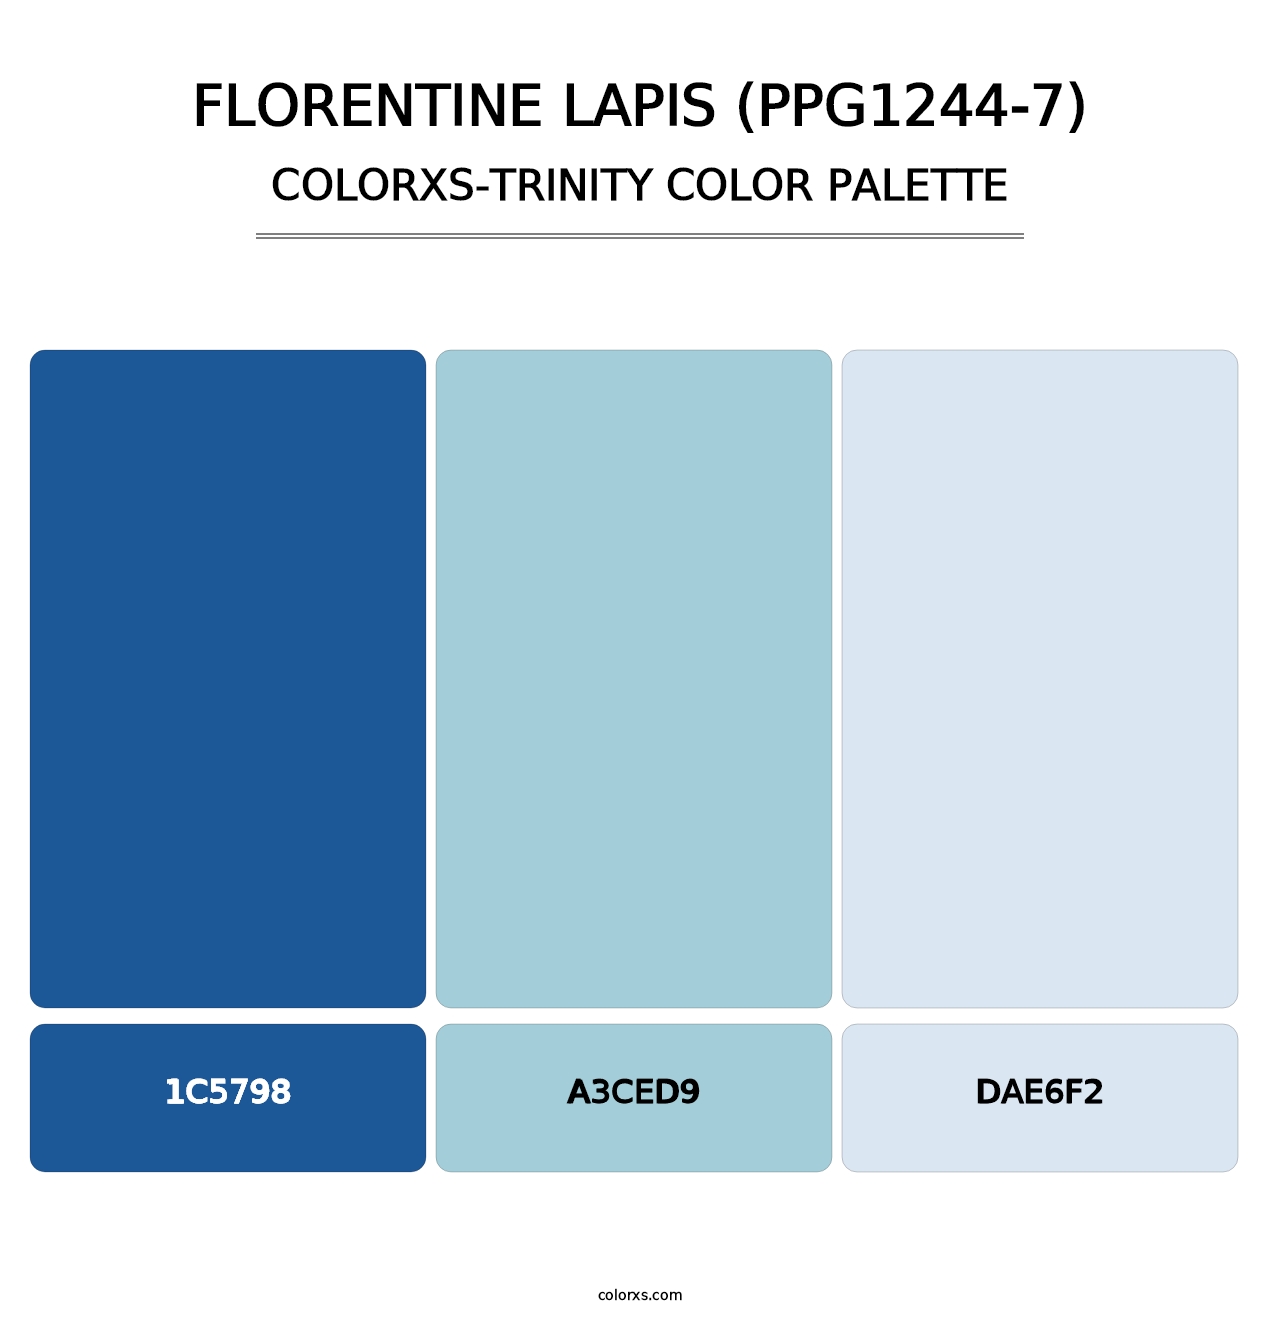 Florentine Lapis (PPG1244-7) - Colorxs Trinity Palette